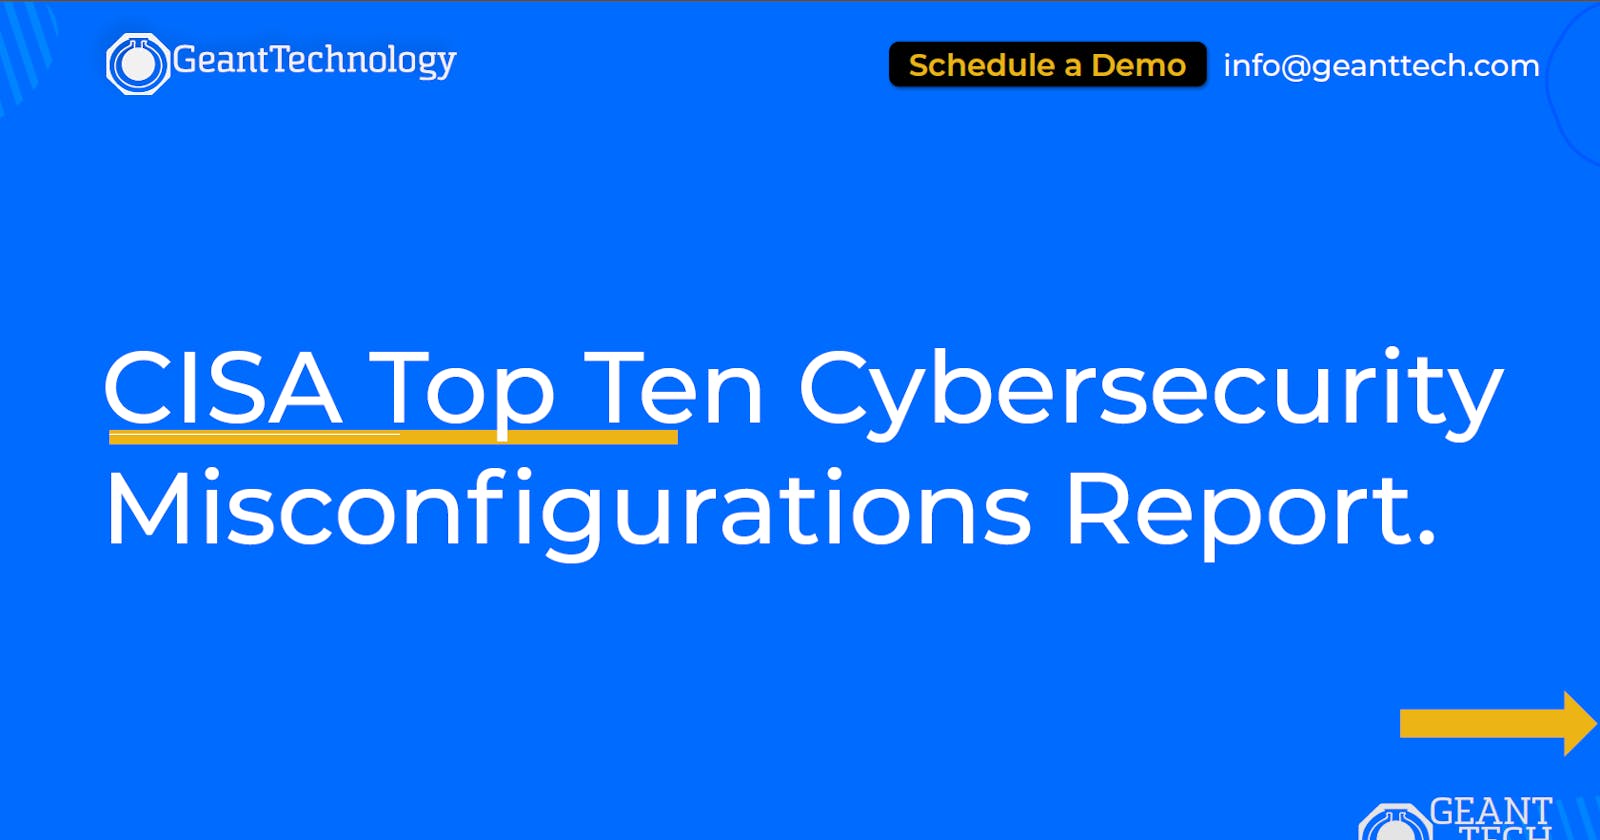 CISA Top Ten Cybersecurity
Misconfigurations